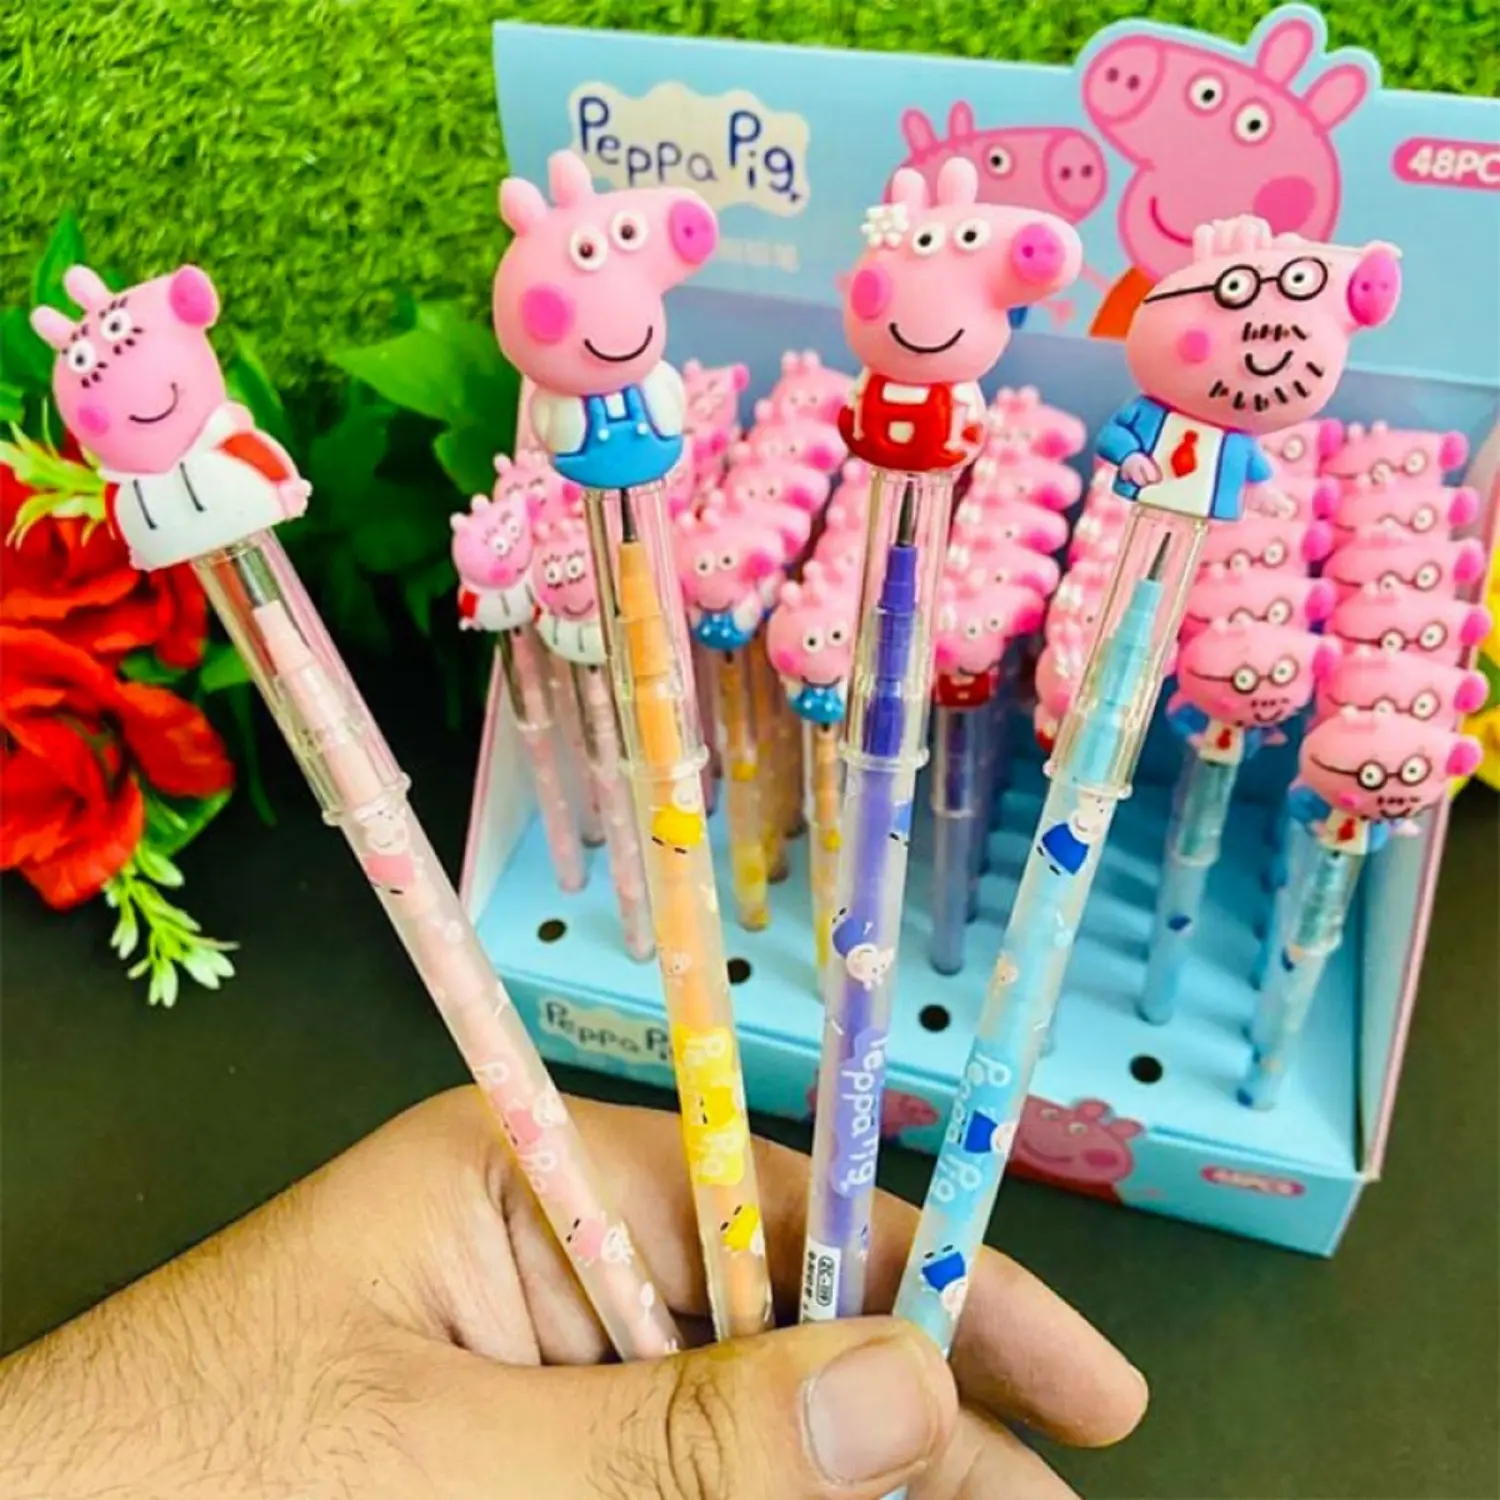 pencils peppa pig theme